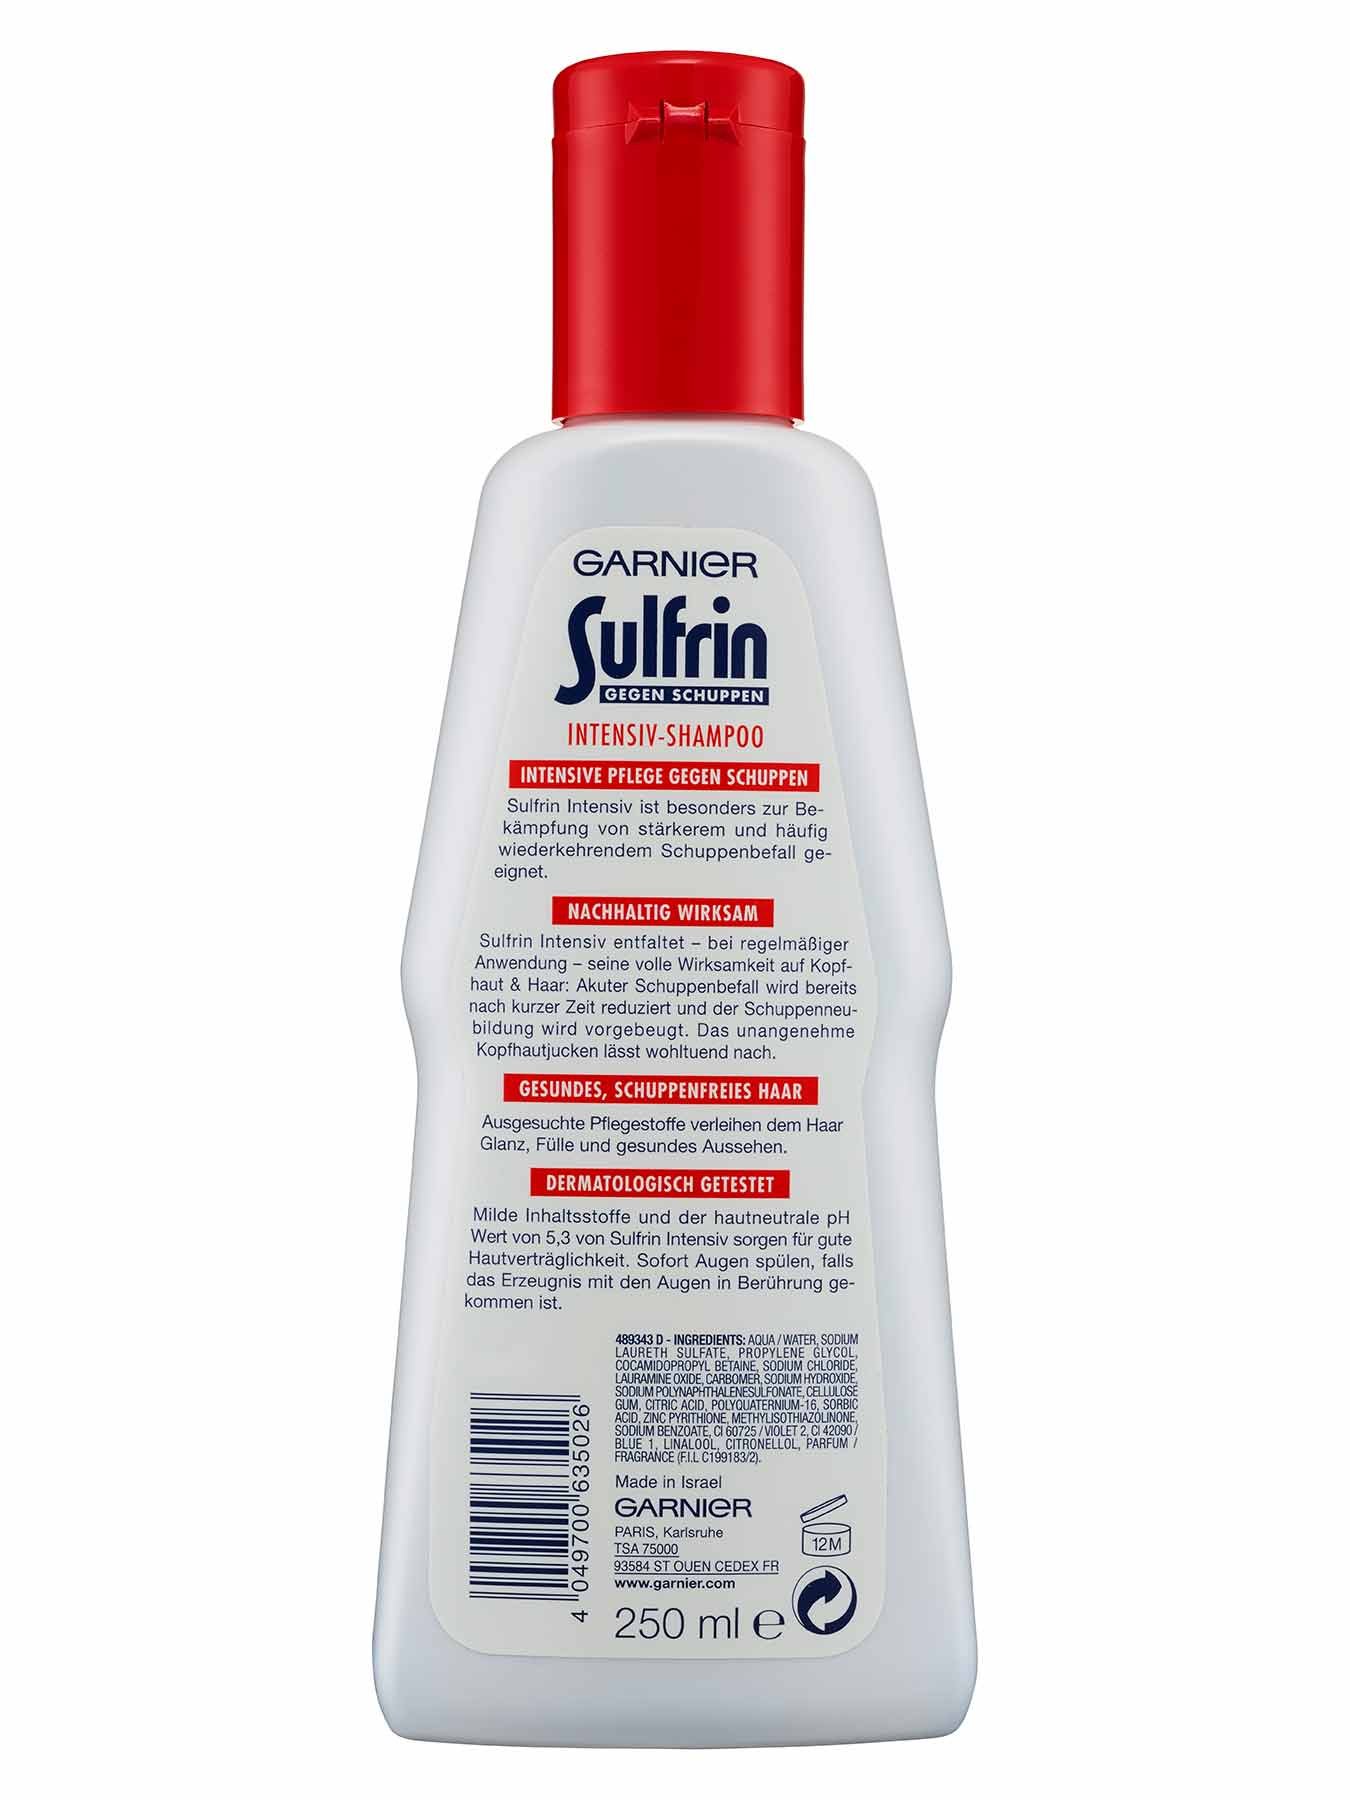 Intensiv-Shampoo-Sulfrin-Gegen-Schuppen-250ml-Rueckseite-Garnier-Deutschland-gr